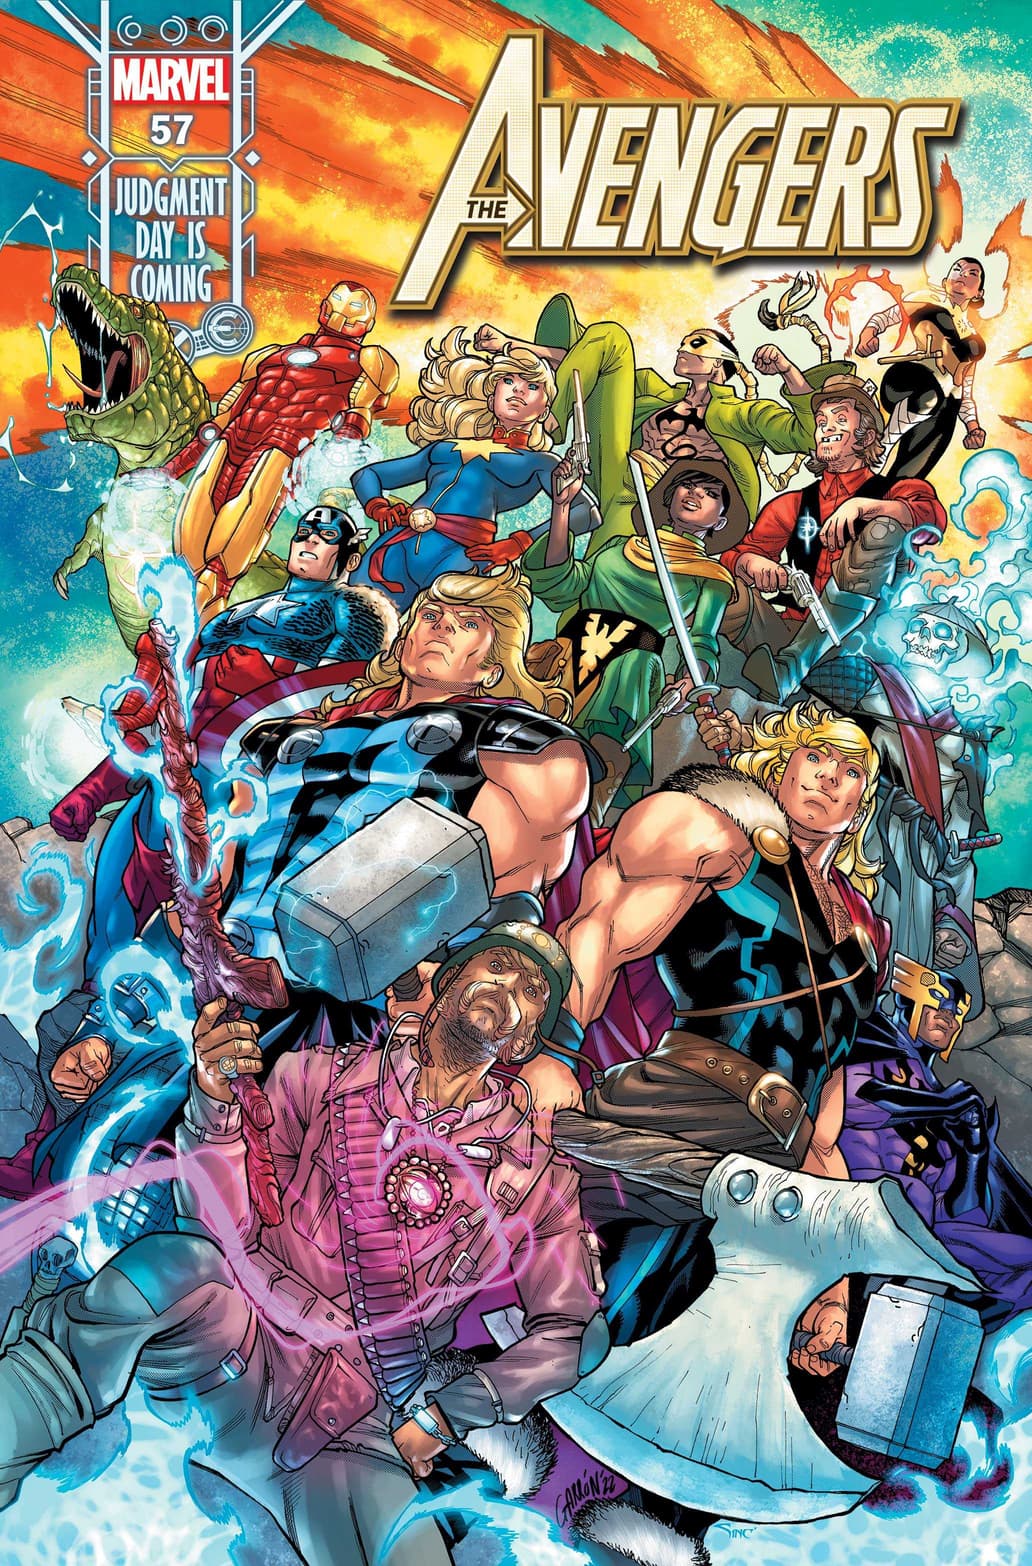 Avengers #57 main cover by Javier Garron